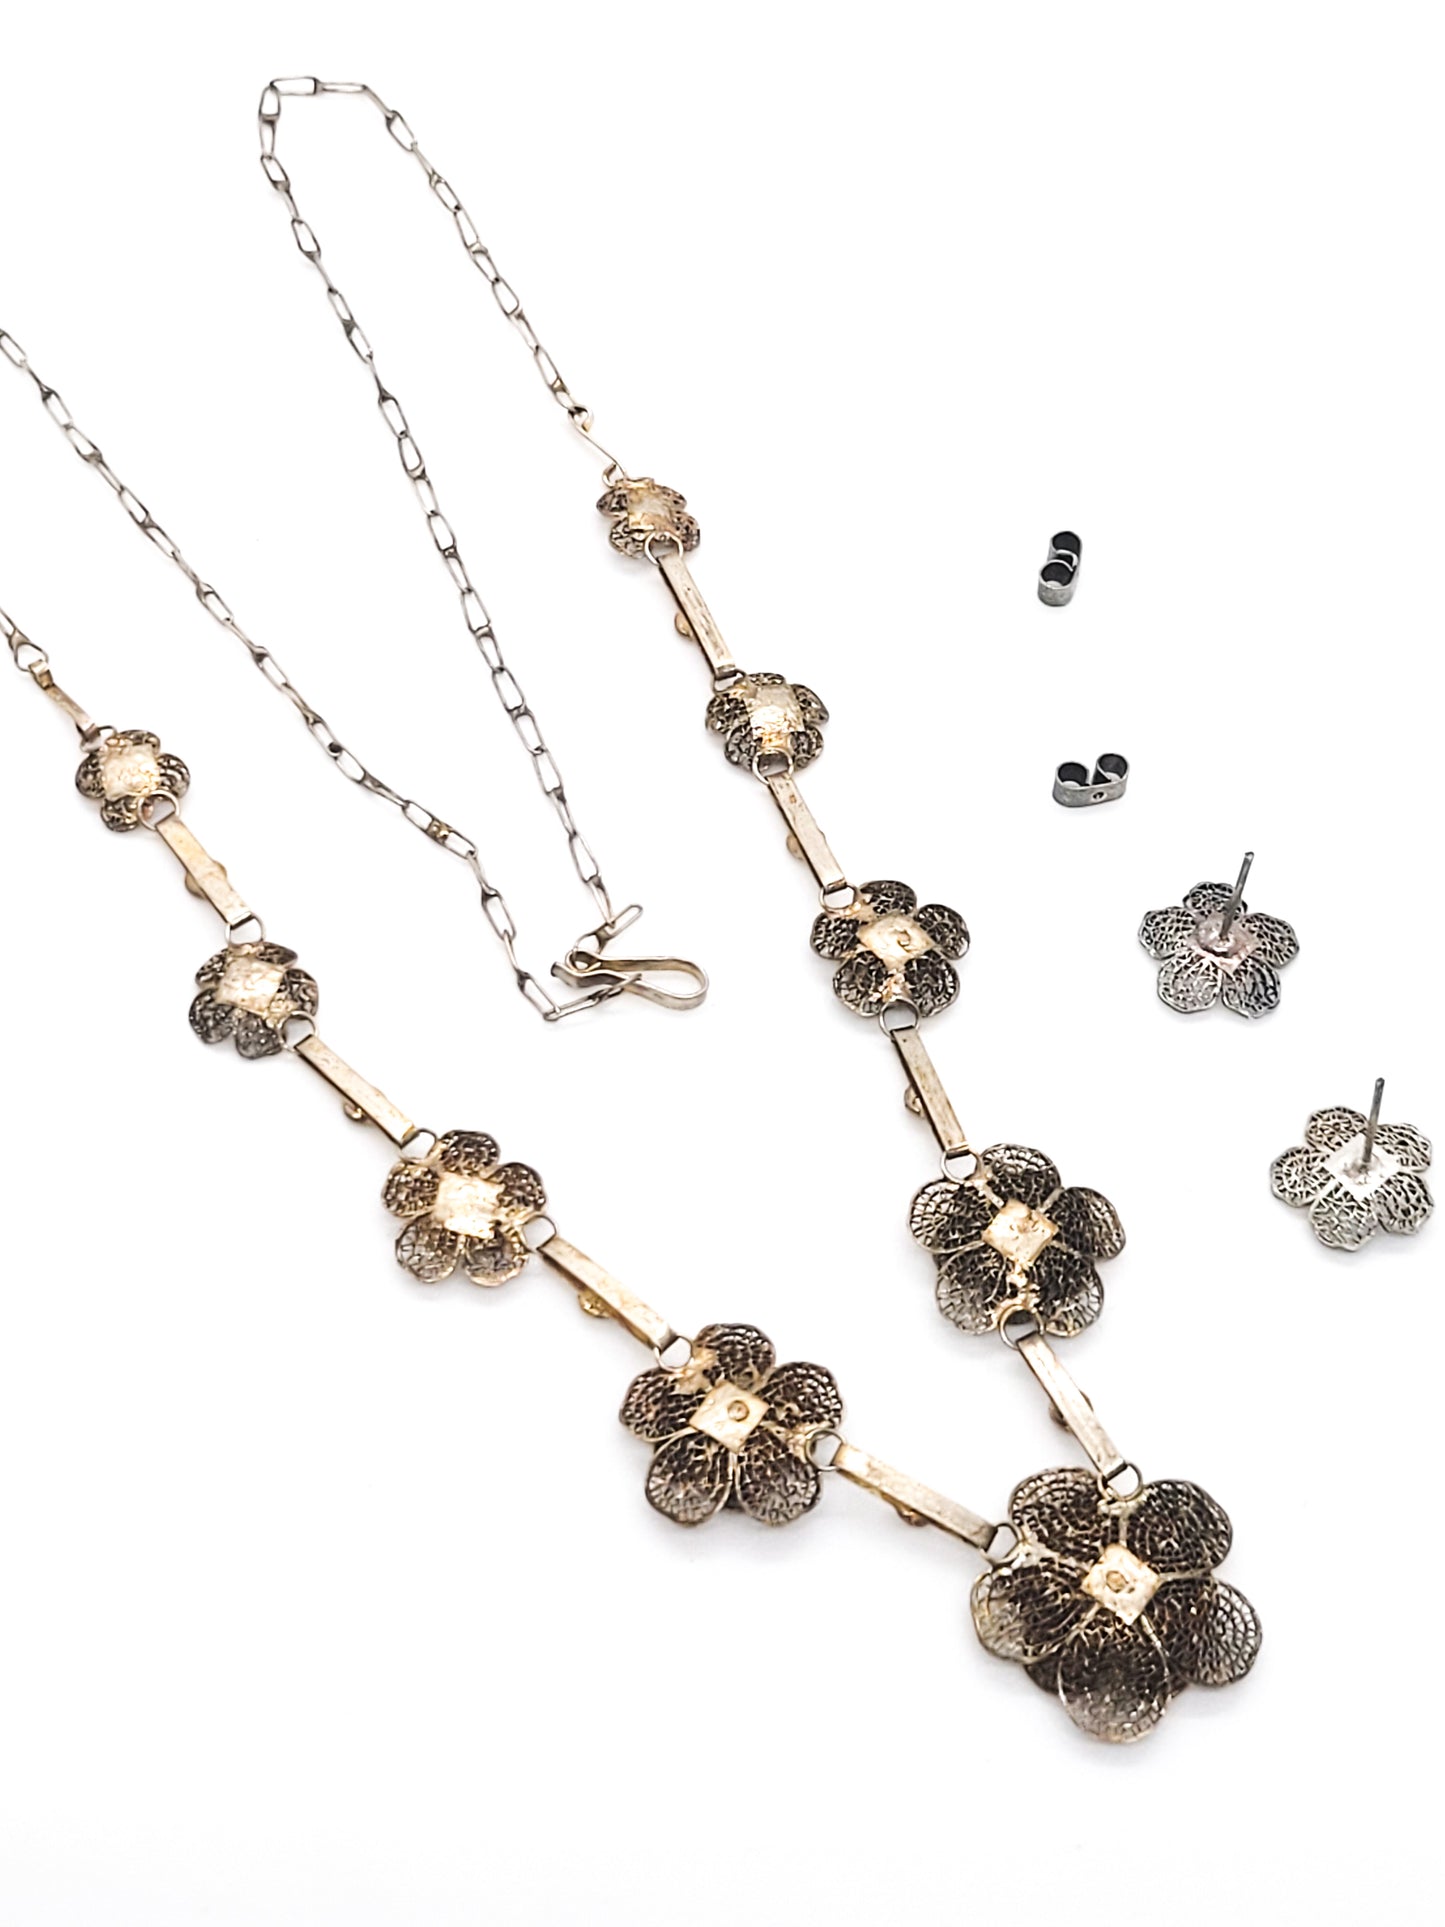 Spun silver flower cannetile vintage necklace set 950 sterling sliver demi parure